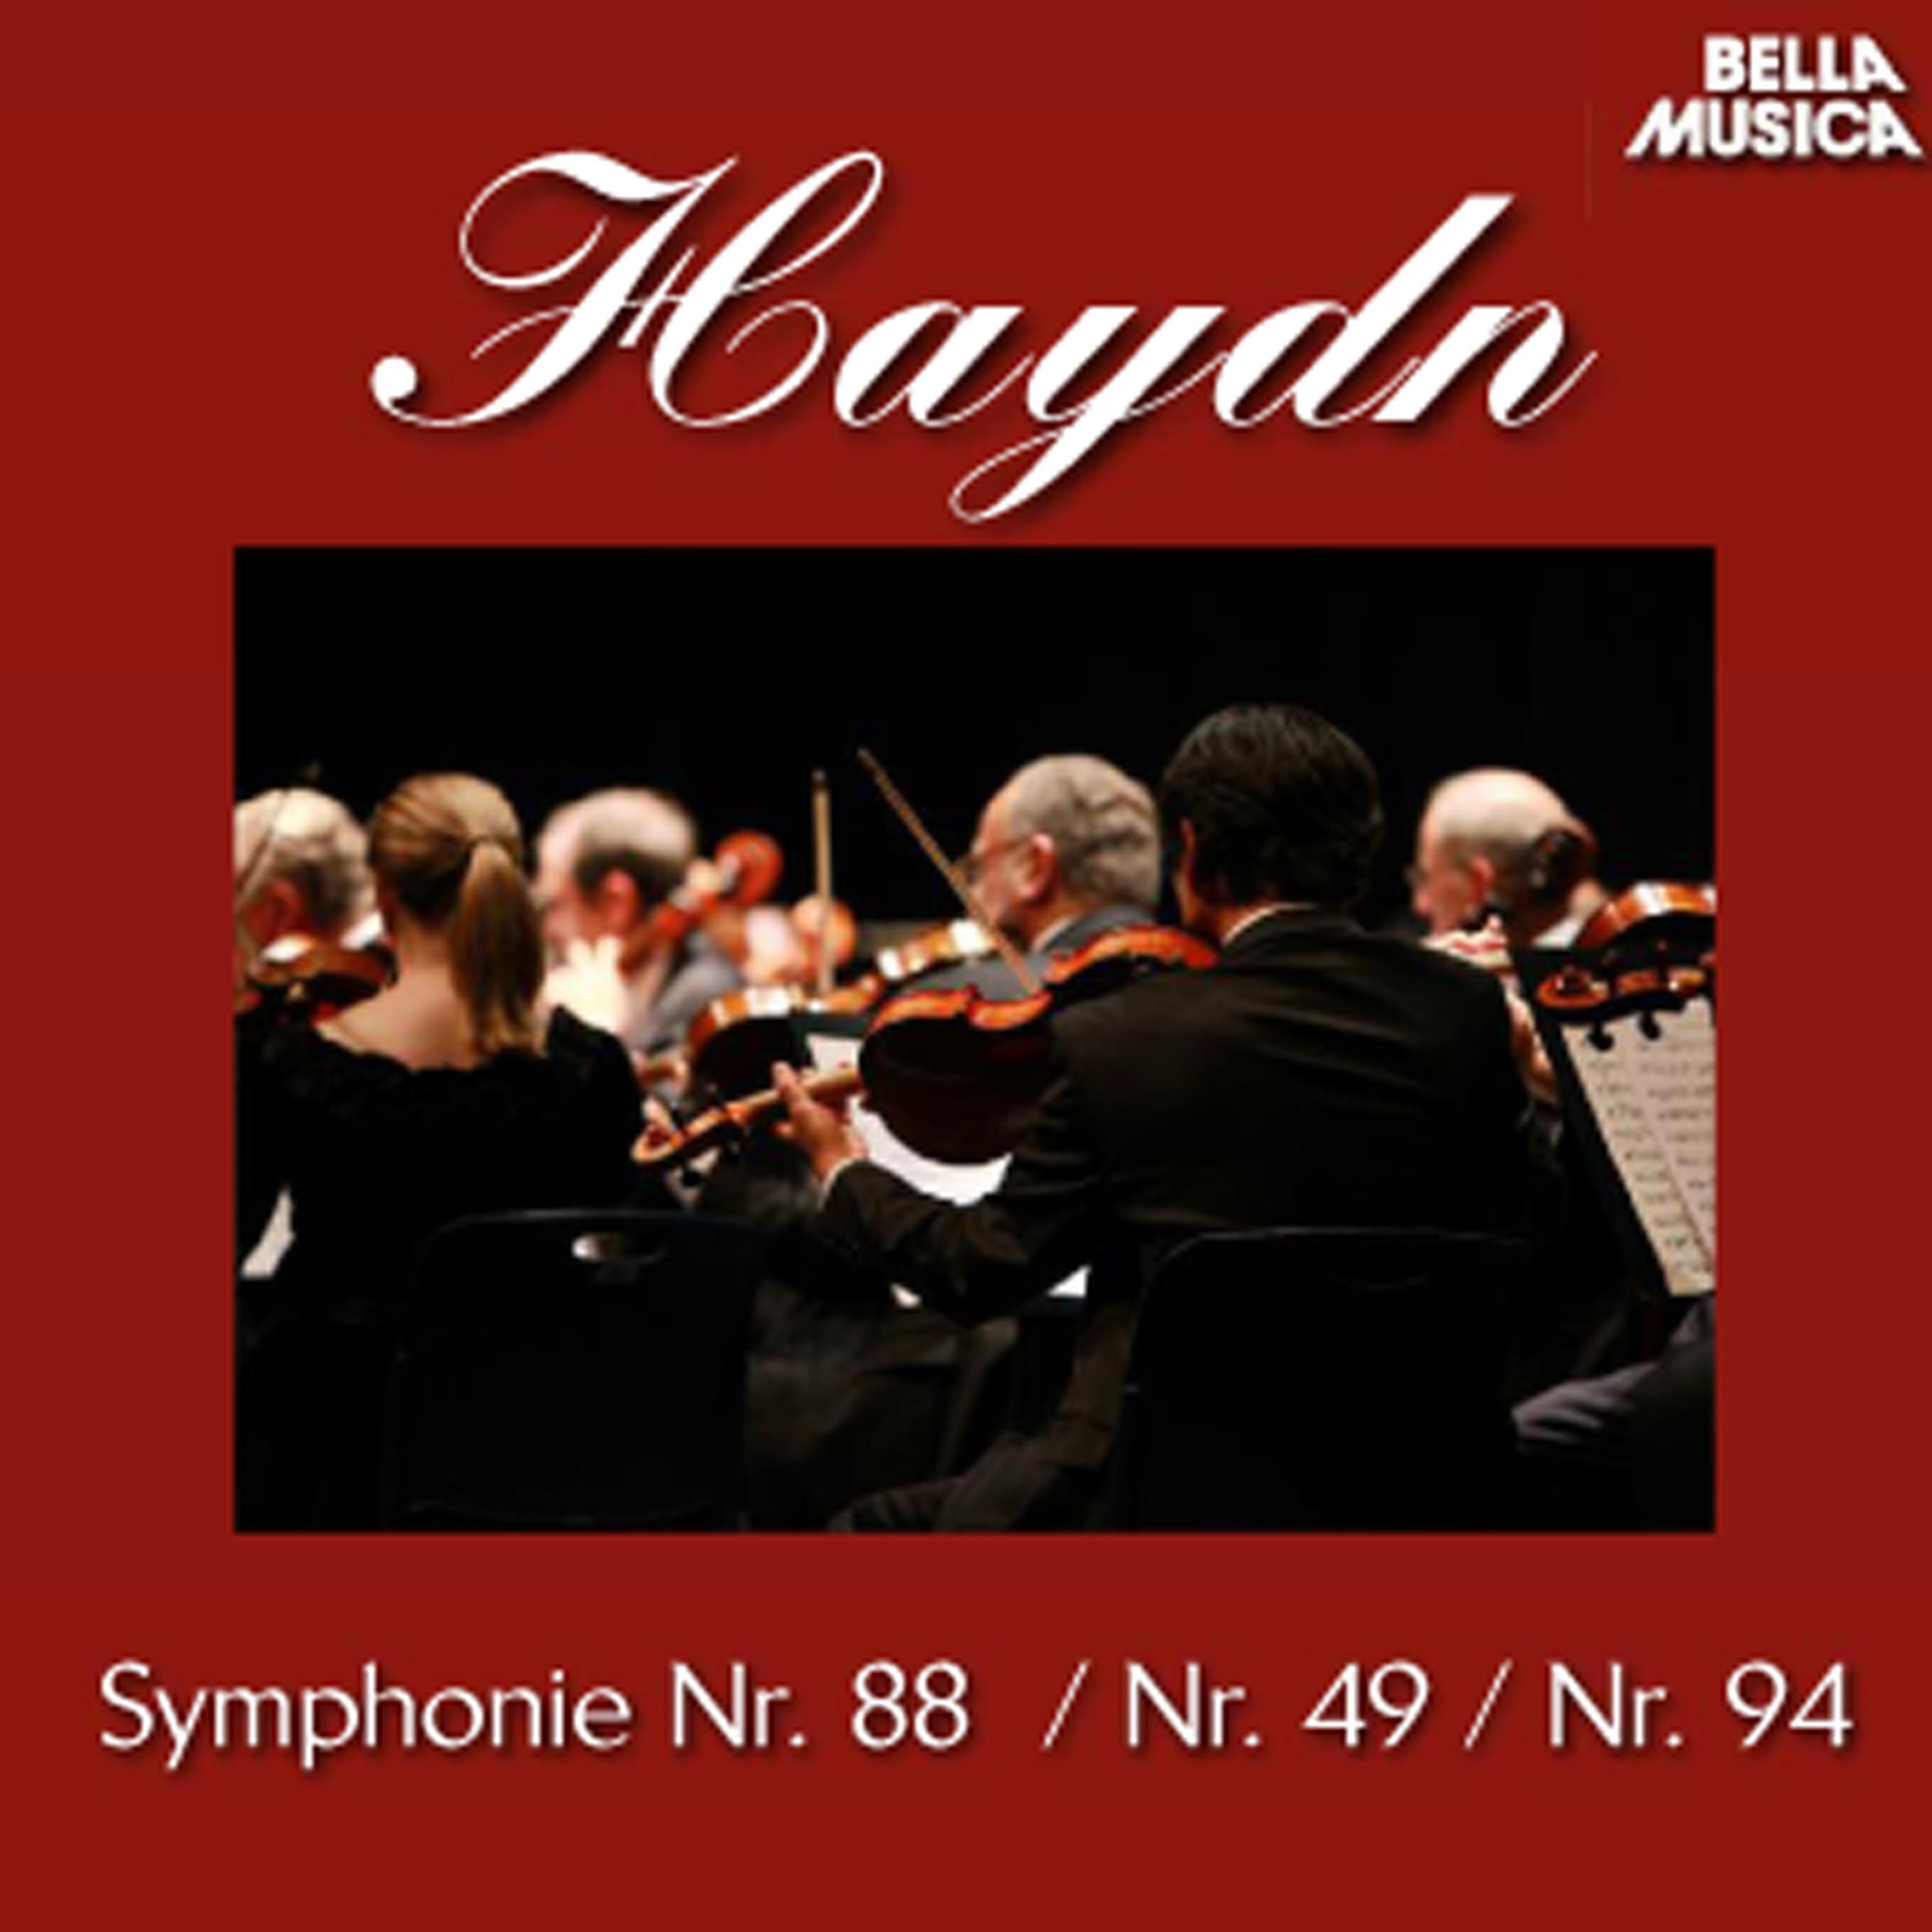 Sinfonie No. 88 fü r Orchester in G Major: II. Largo